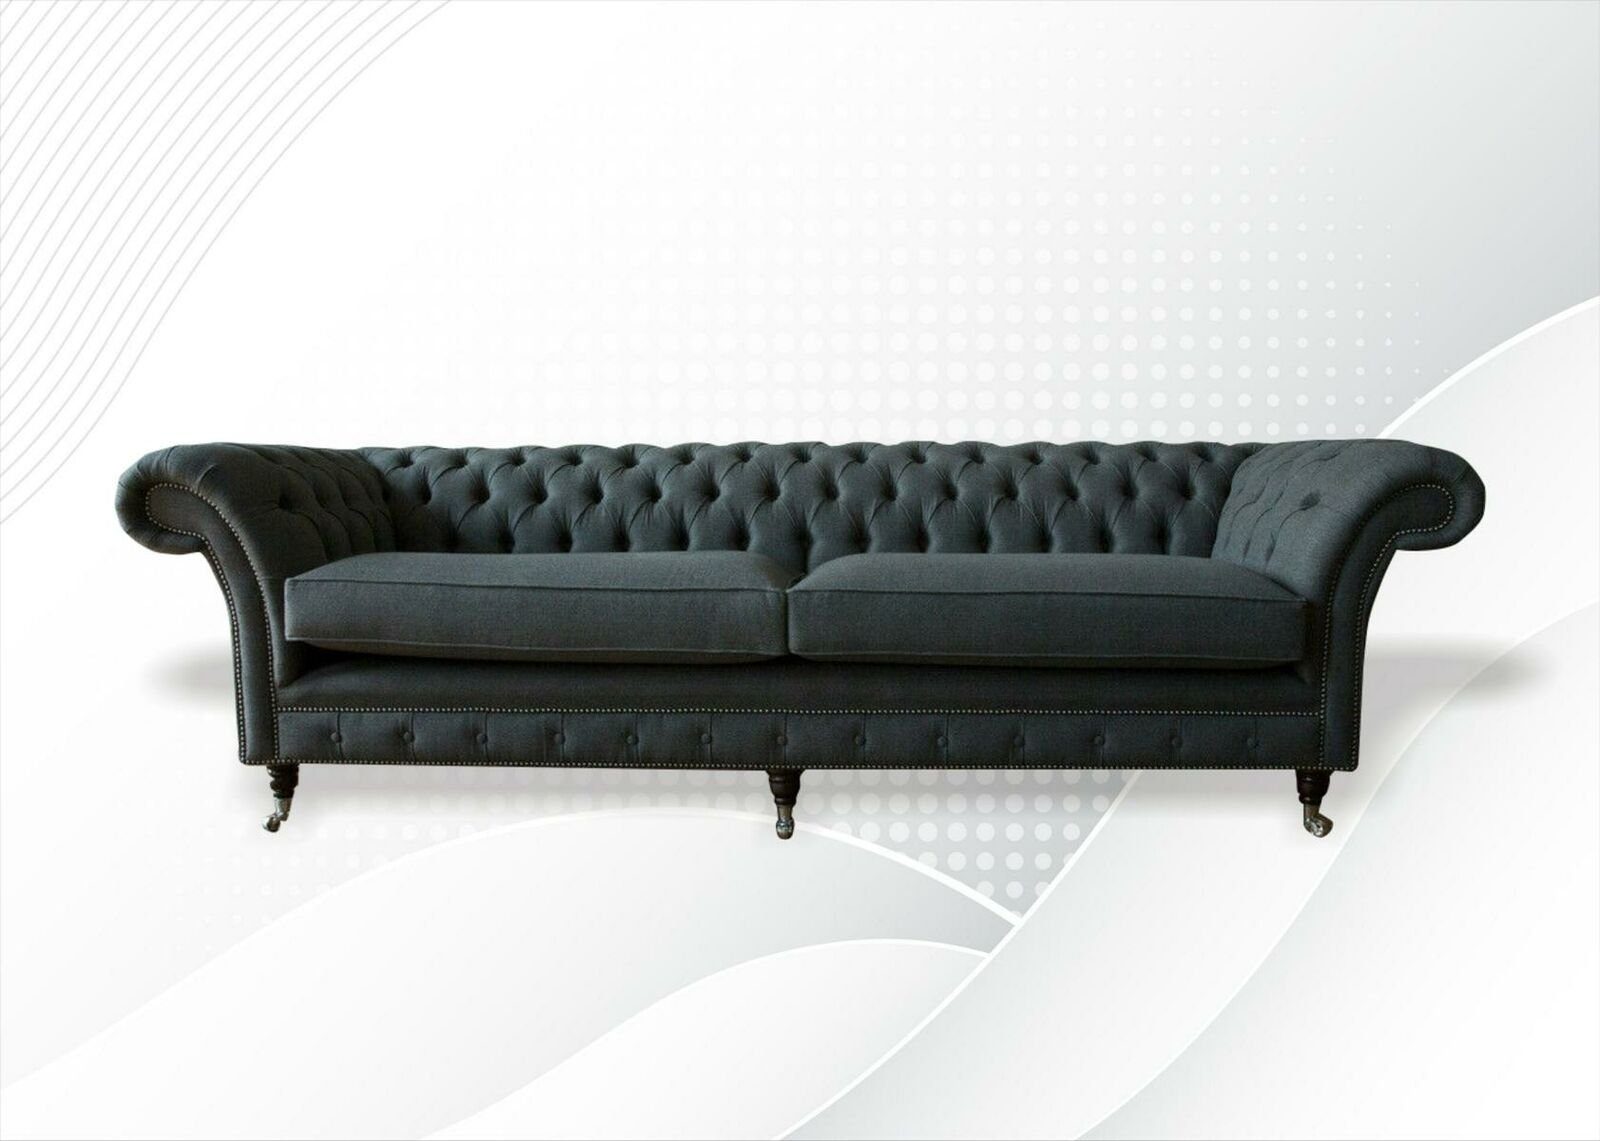 JVmoebel Chesterfield-Sofa Großer Viersitzer luxus xxl Couch Chesterfield Design Neue Möbel, Made in Europe | Chesterfield-Sofas